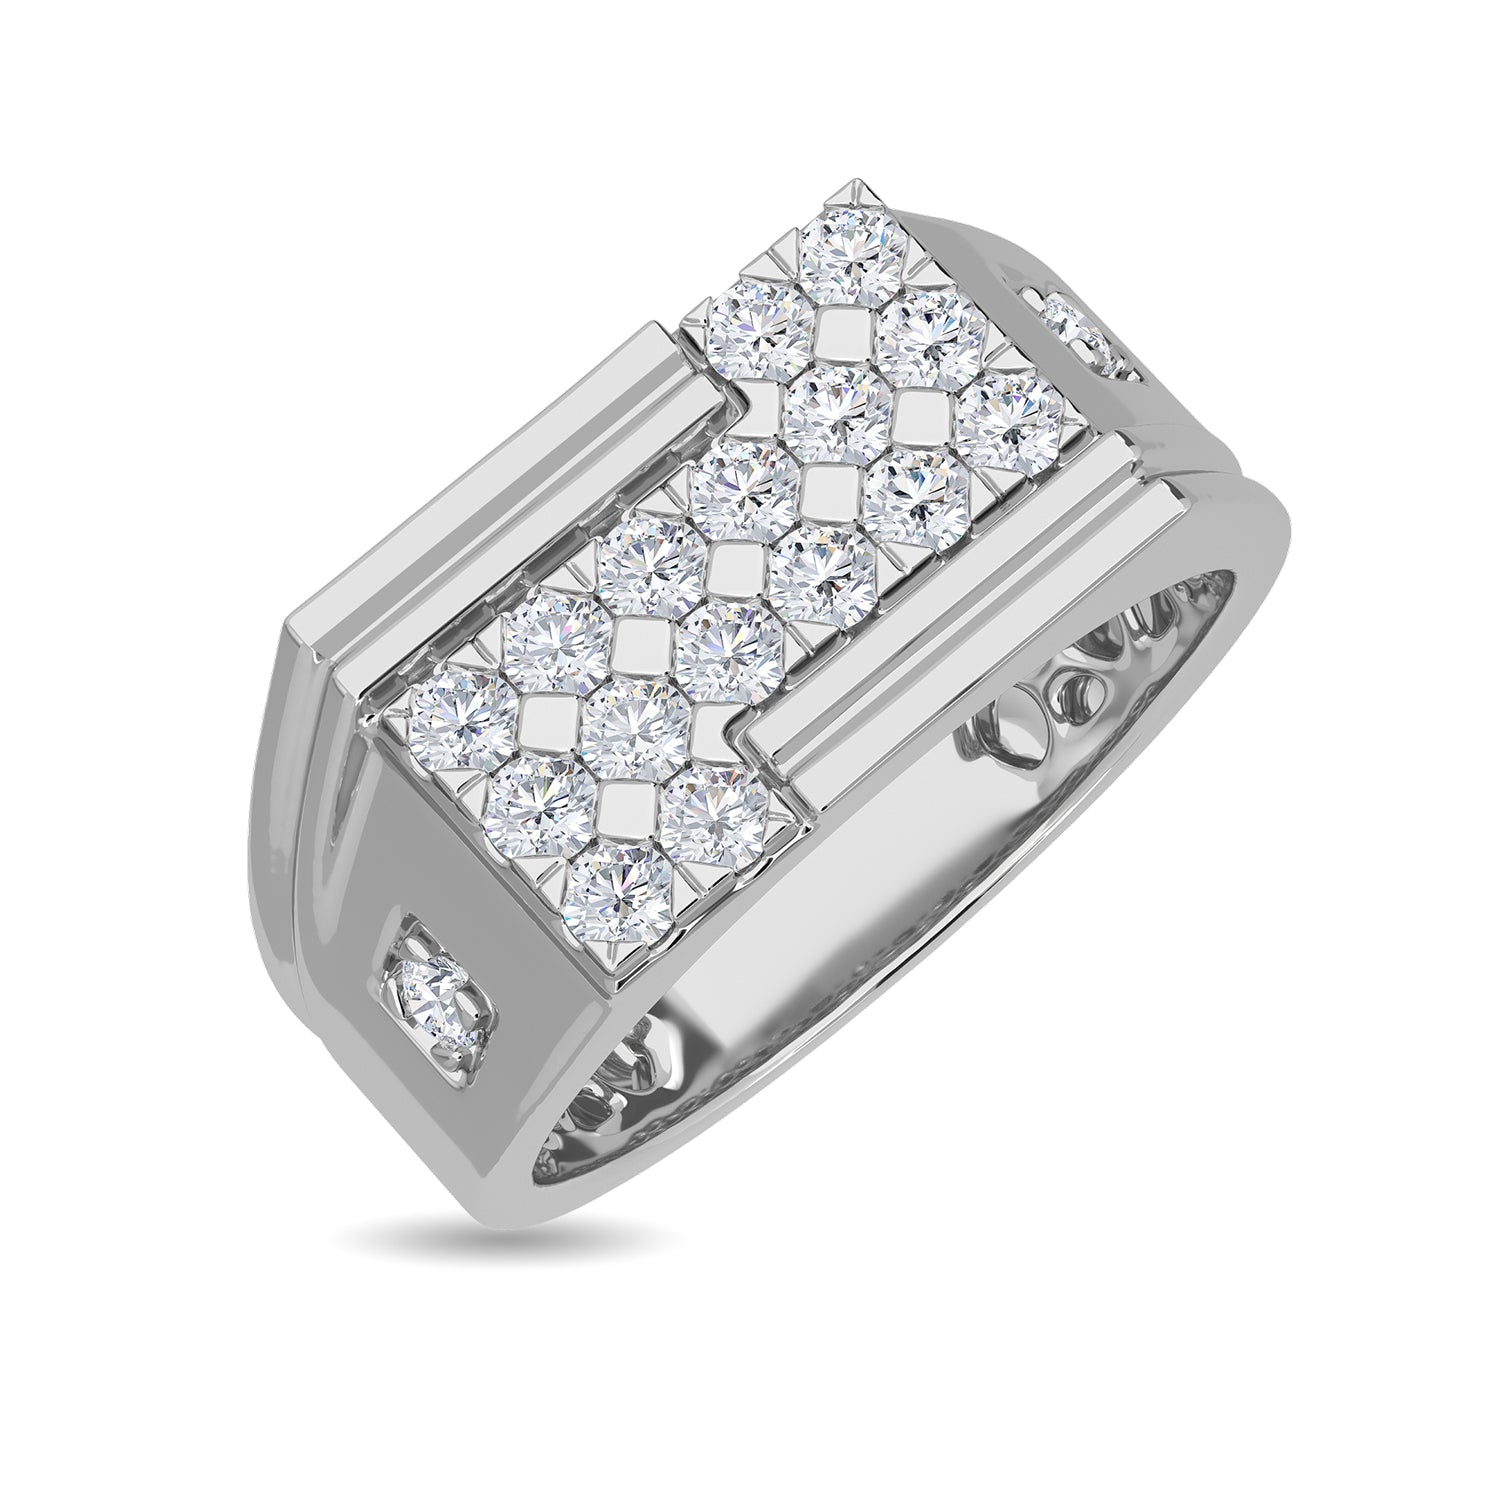 Buy 18K White Gold Diamond Men's Wedding Band 18K Two Tone Gold Diamond  Wedding Ring Men's Diamond Ring 18K Gold Diamond Engagement Ring Online in  India - Etsy